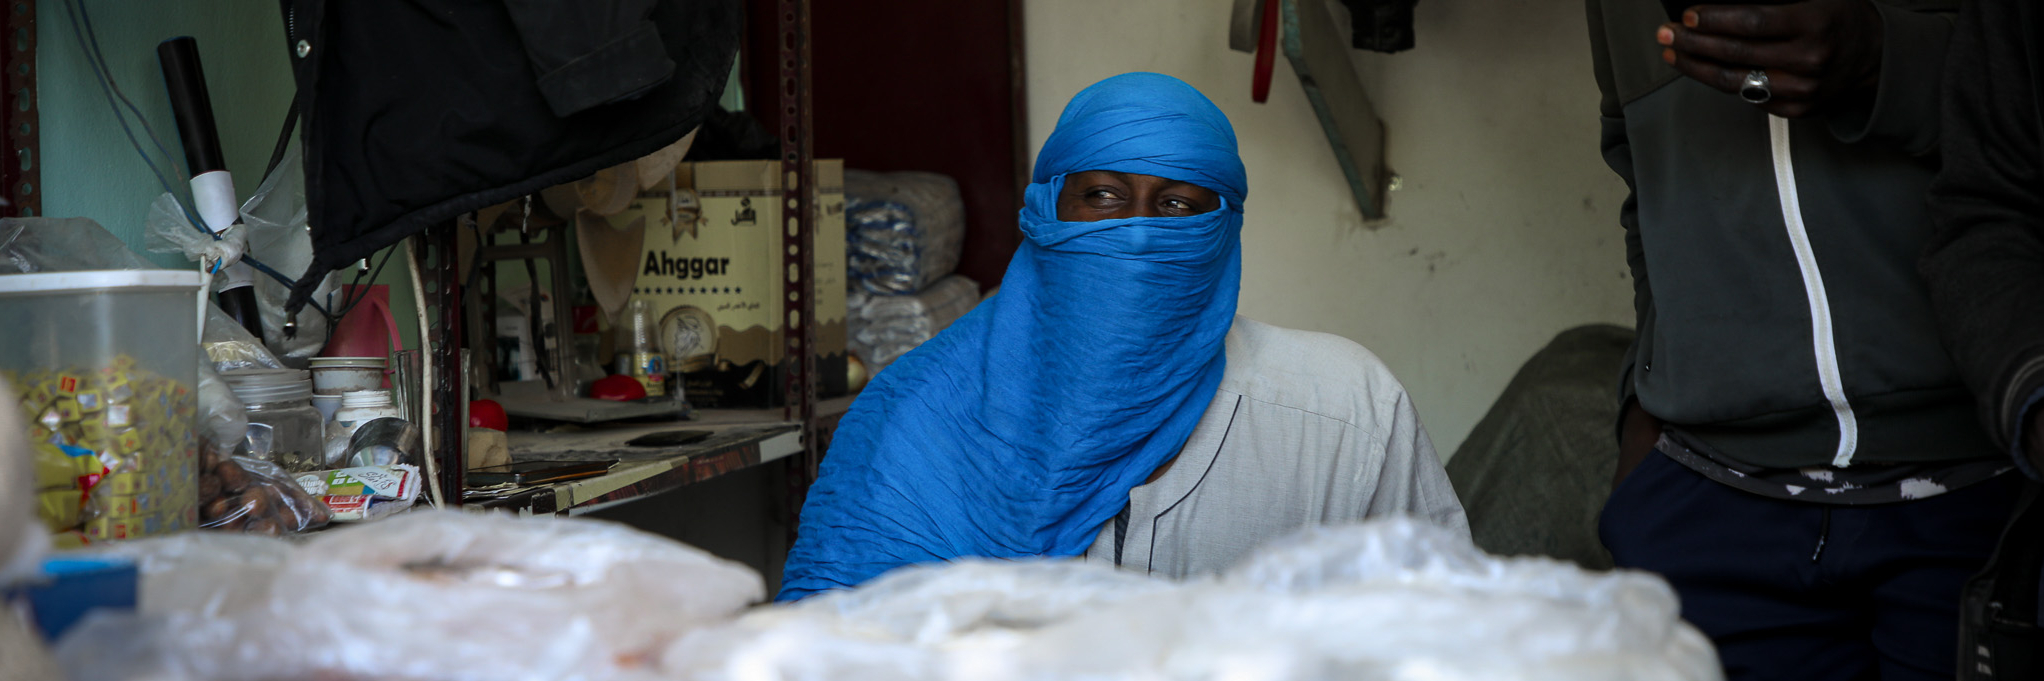 Arbeitsmigrant in Tripolis Libyen an einem Verkaufstand mit leuchtend blauem Turban.